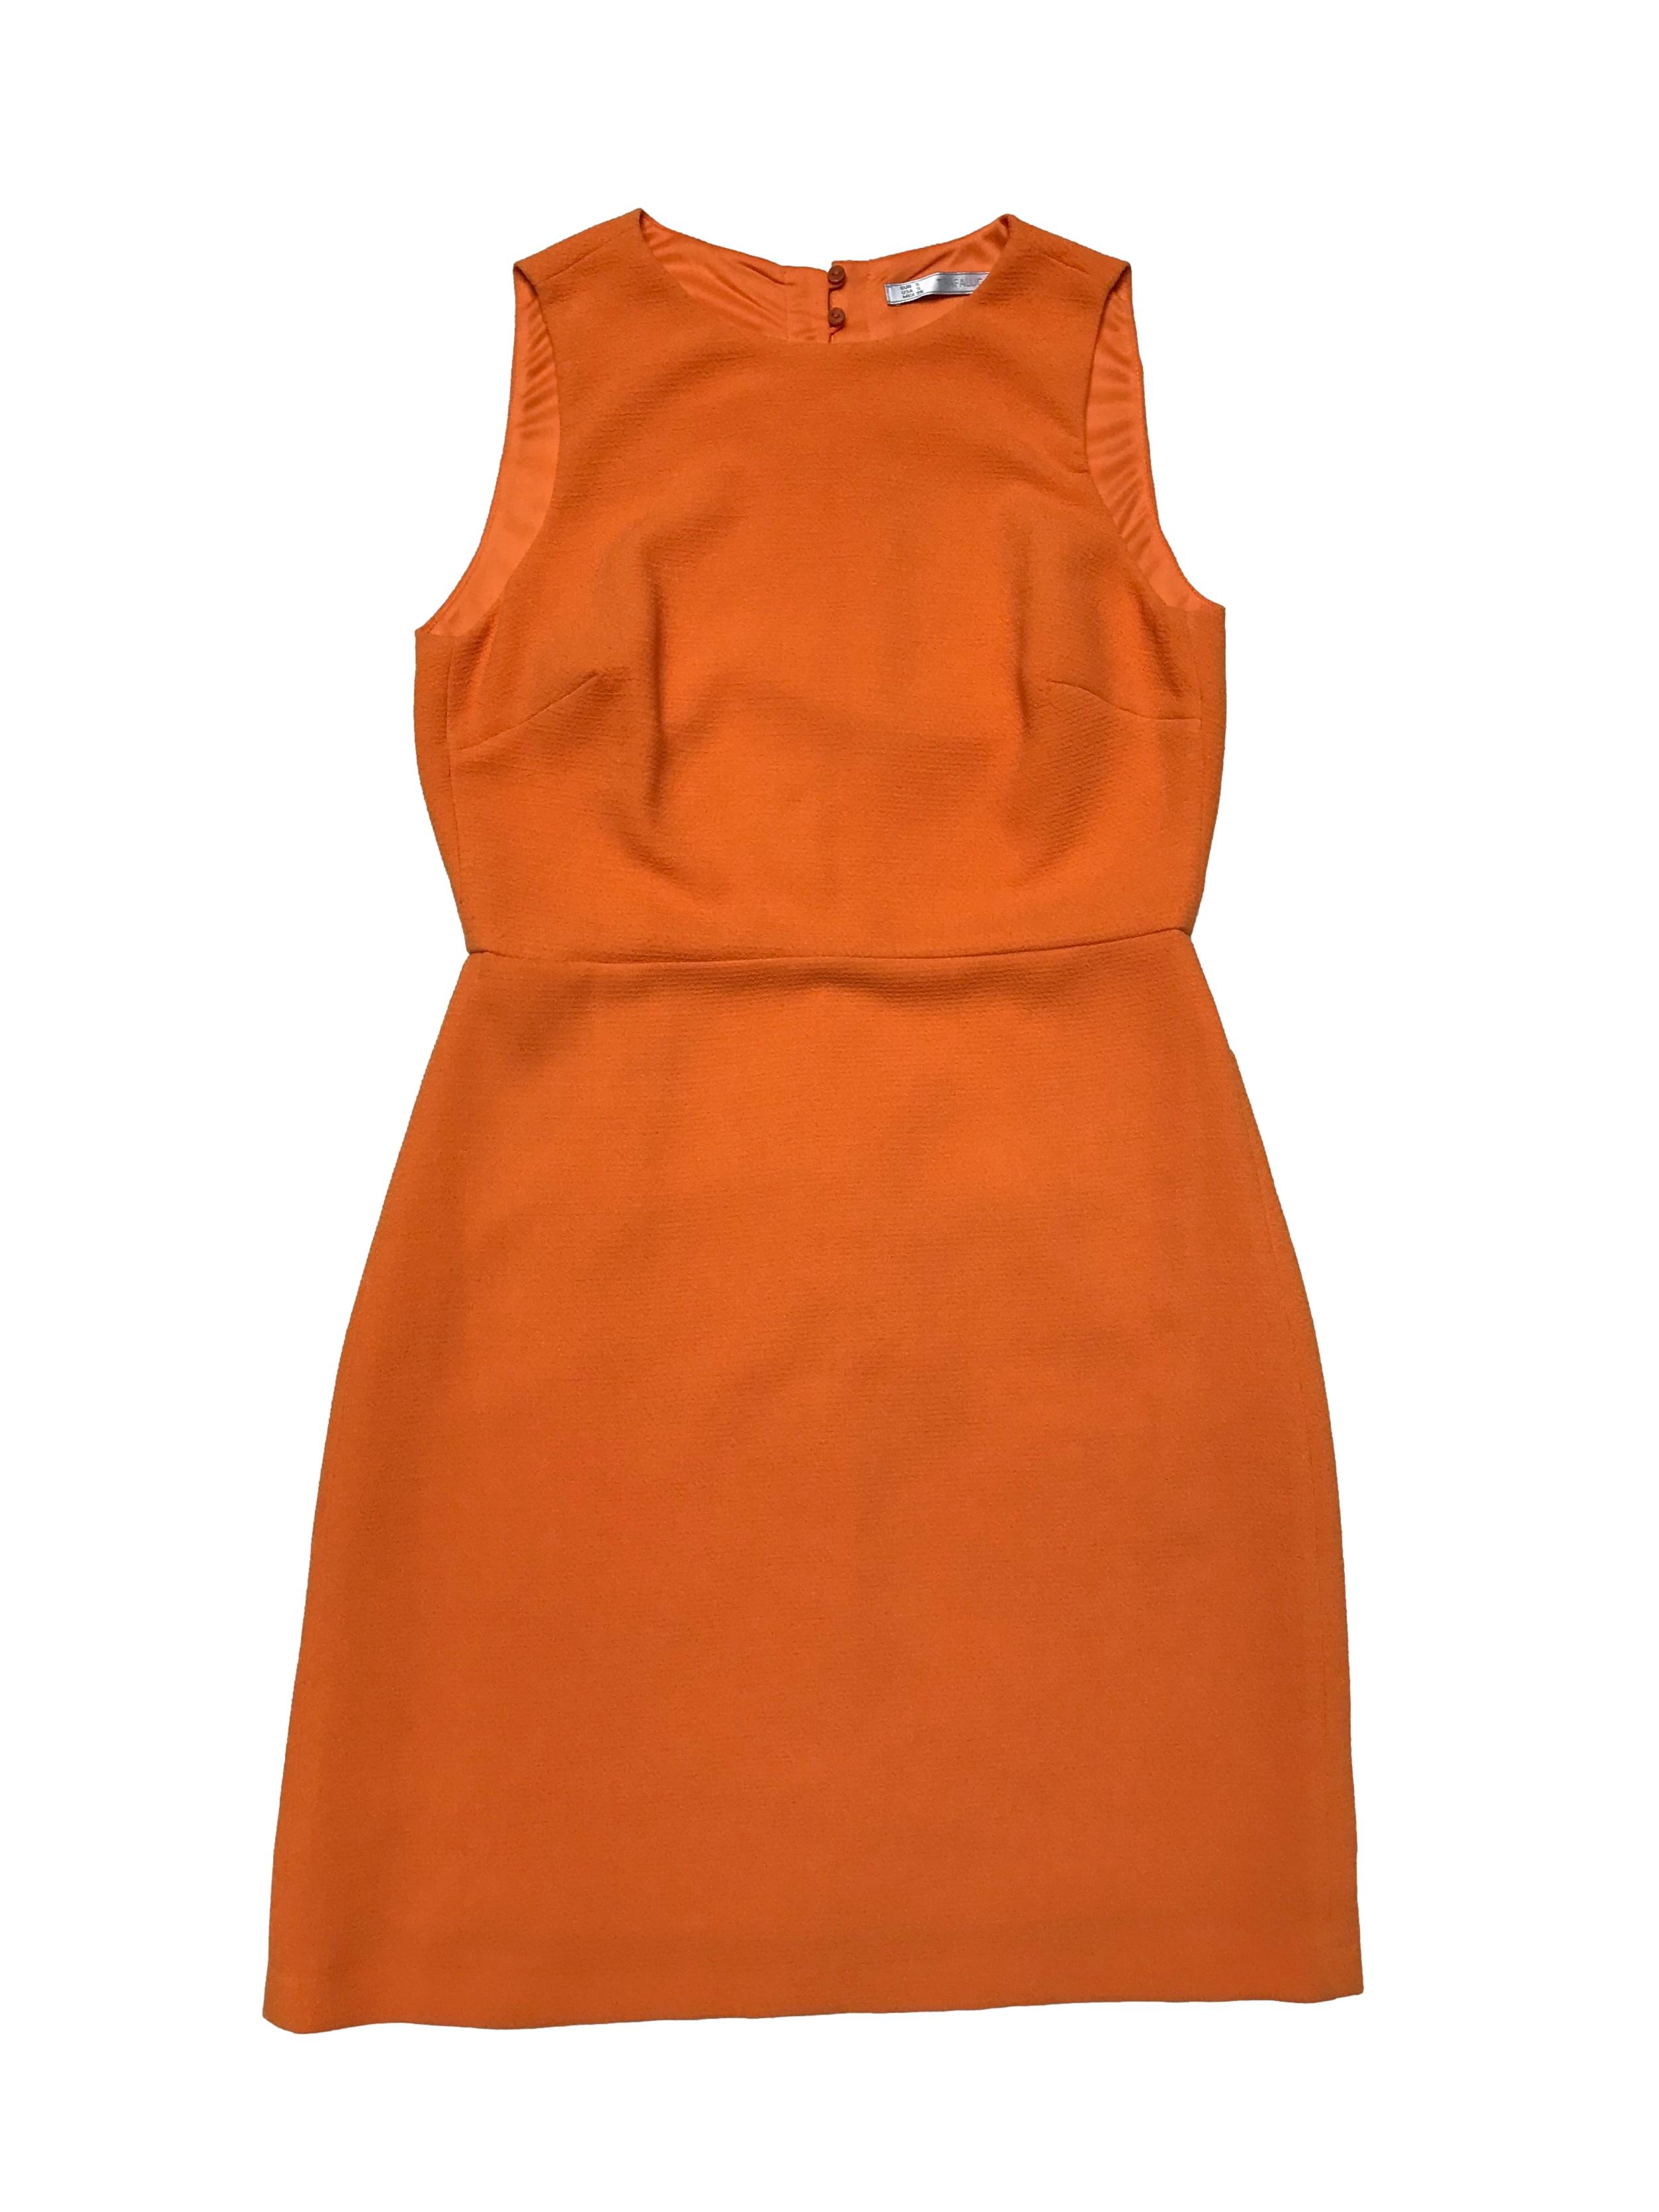 Vestido Zara anaranjado de tela con textura, forrado, con botón posterior en el cuello, escote en espalda y cierre en falda. Busto 90cm Cintura 72cm Largo 85cm